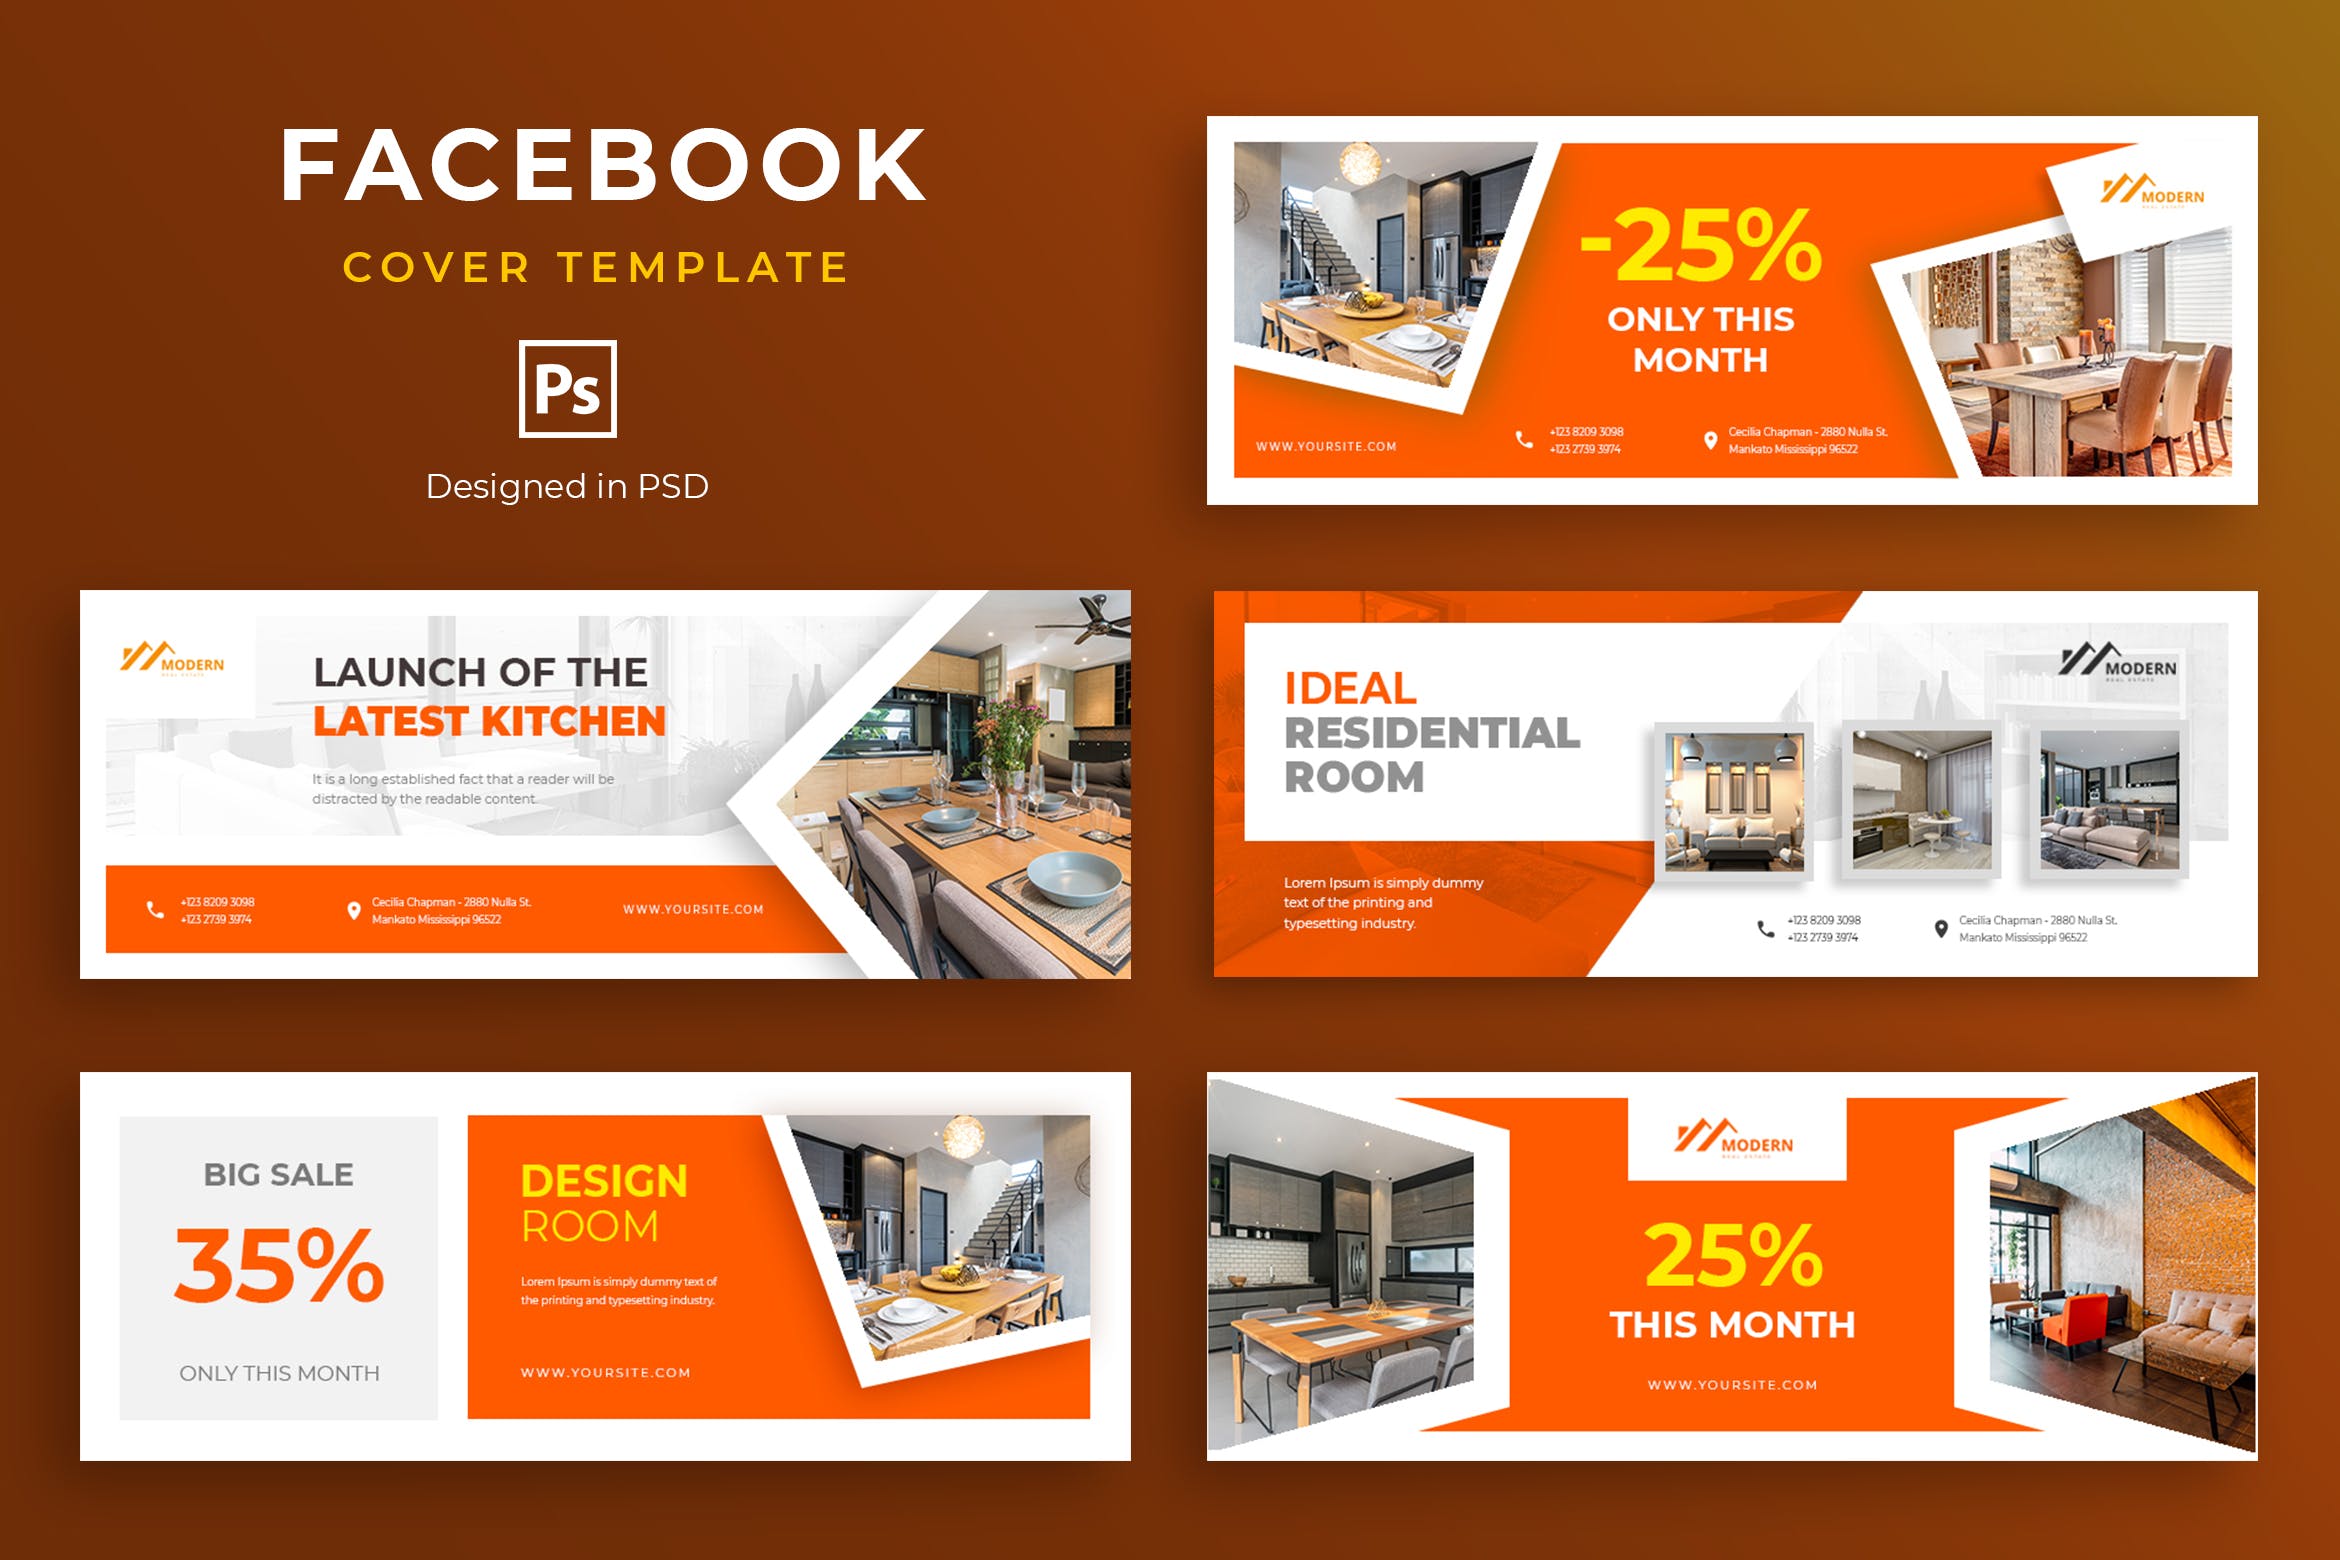 家具品牌Facebook营销推广主页封面设计模板第一素材精选 Furniture Facebook Cover Template插图